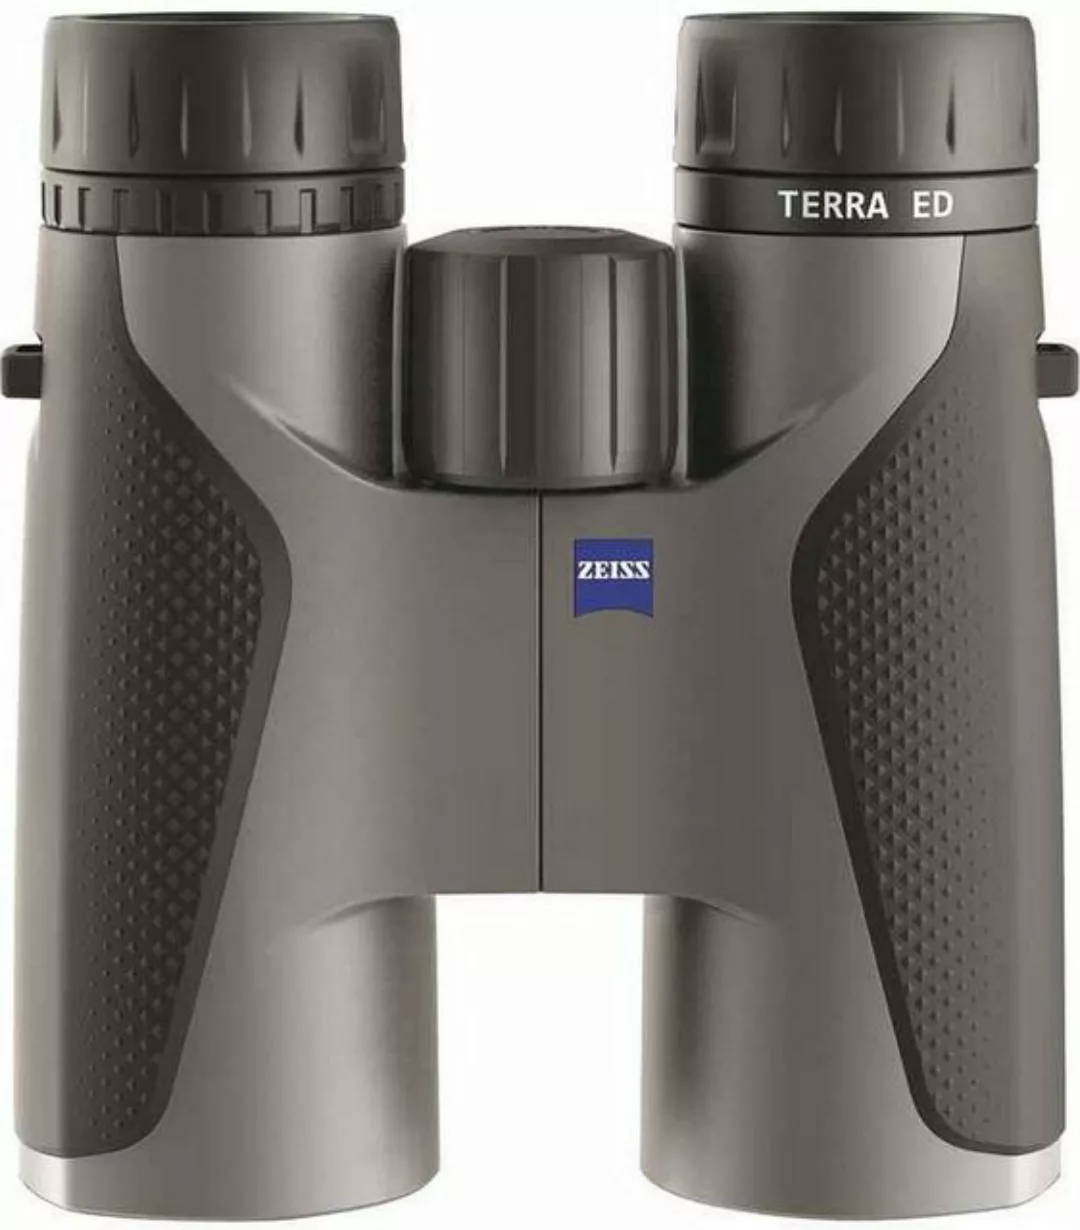 ZEISS Terra ED 8x42 schwarz/grau Fernglas günstig online kaufen